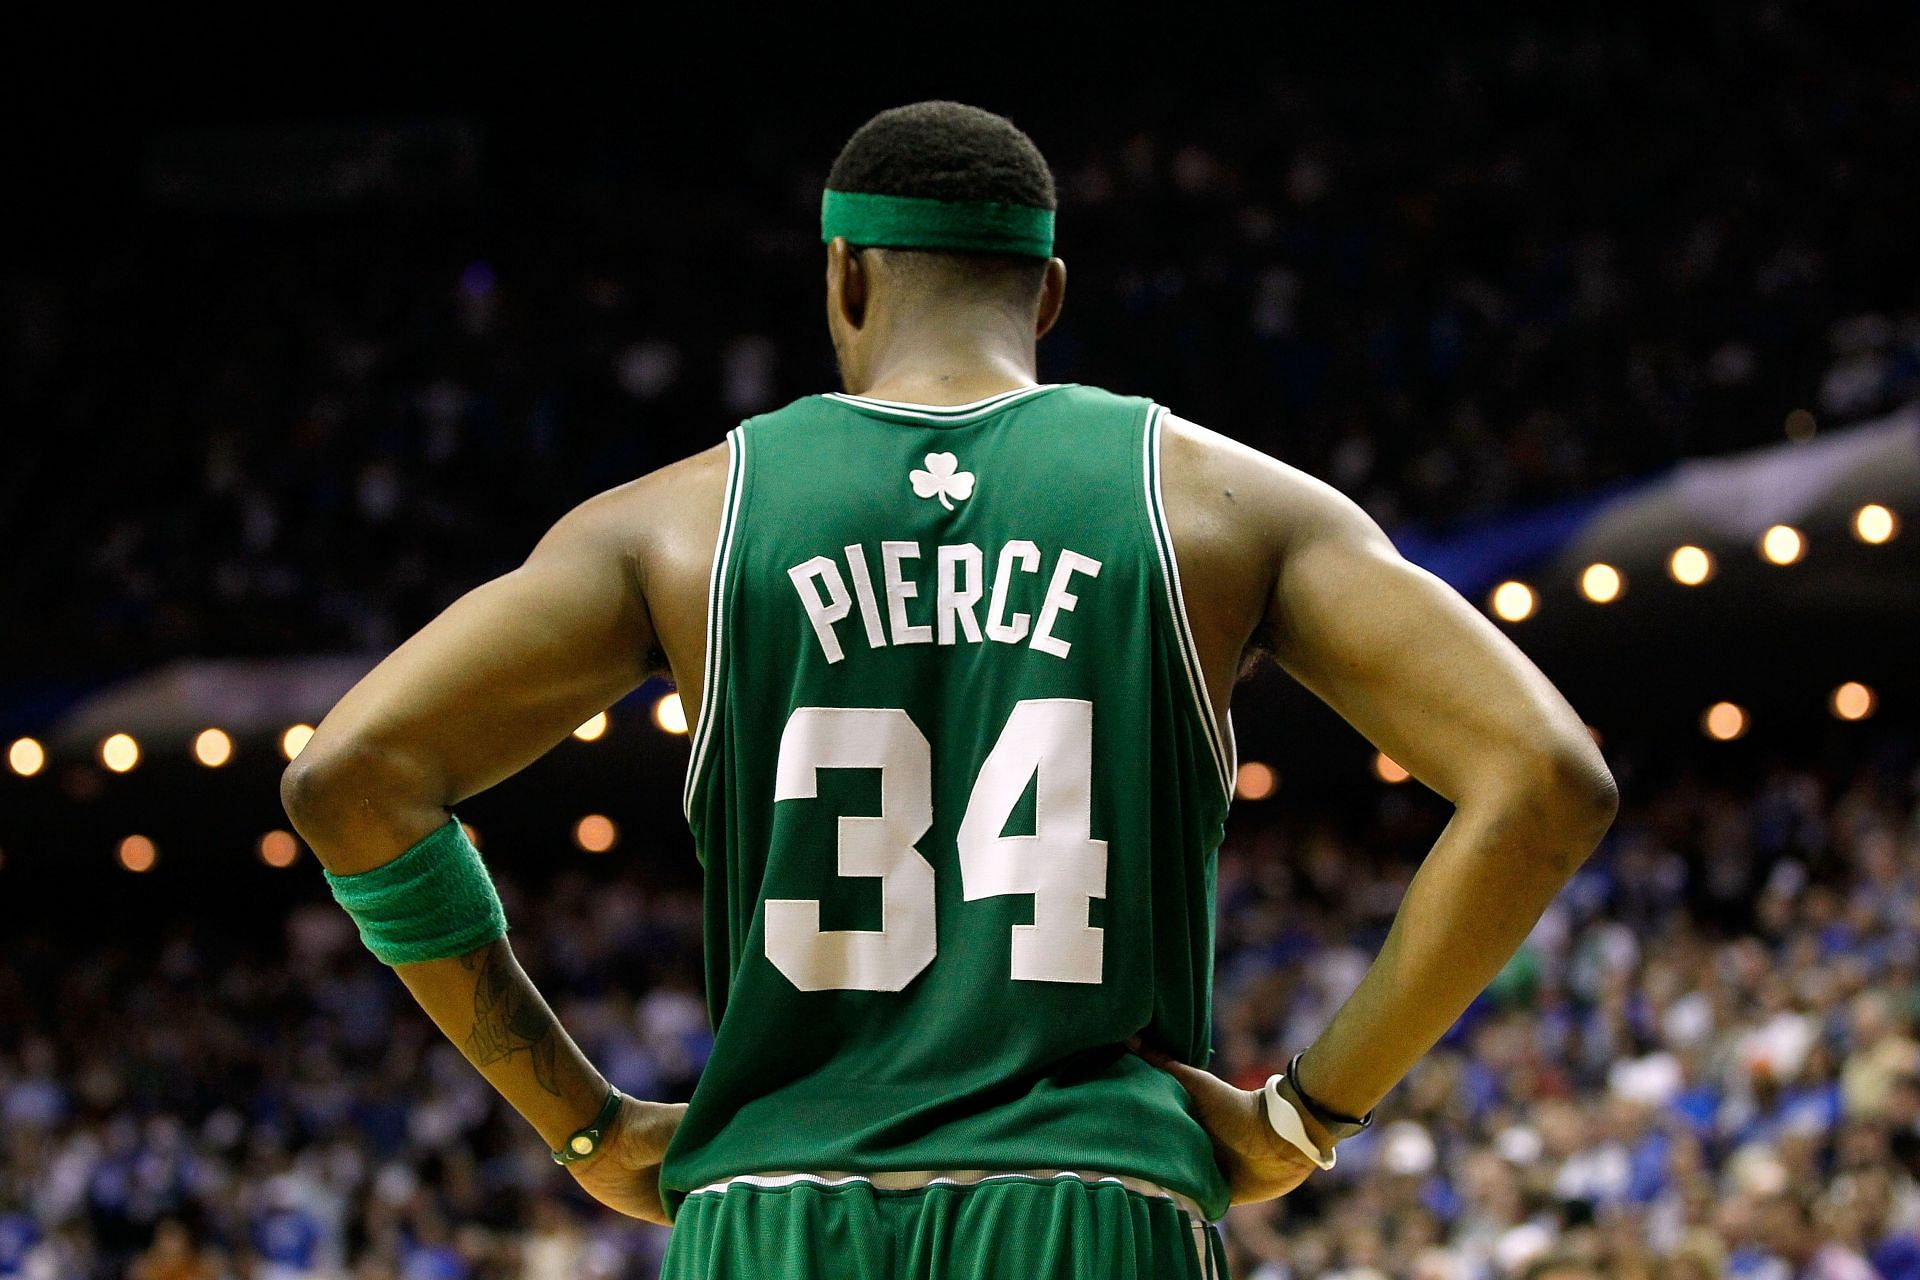 Paul Perce is a Boston Celtics legend (Image via Getty Images)